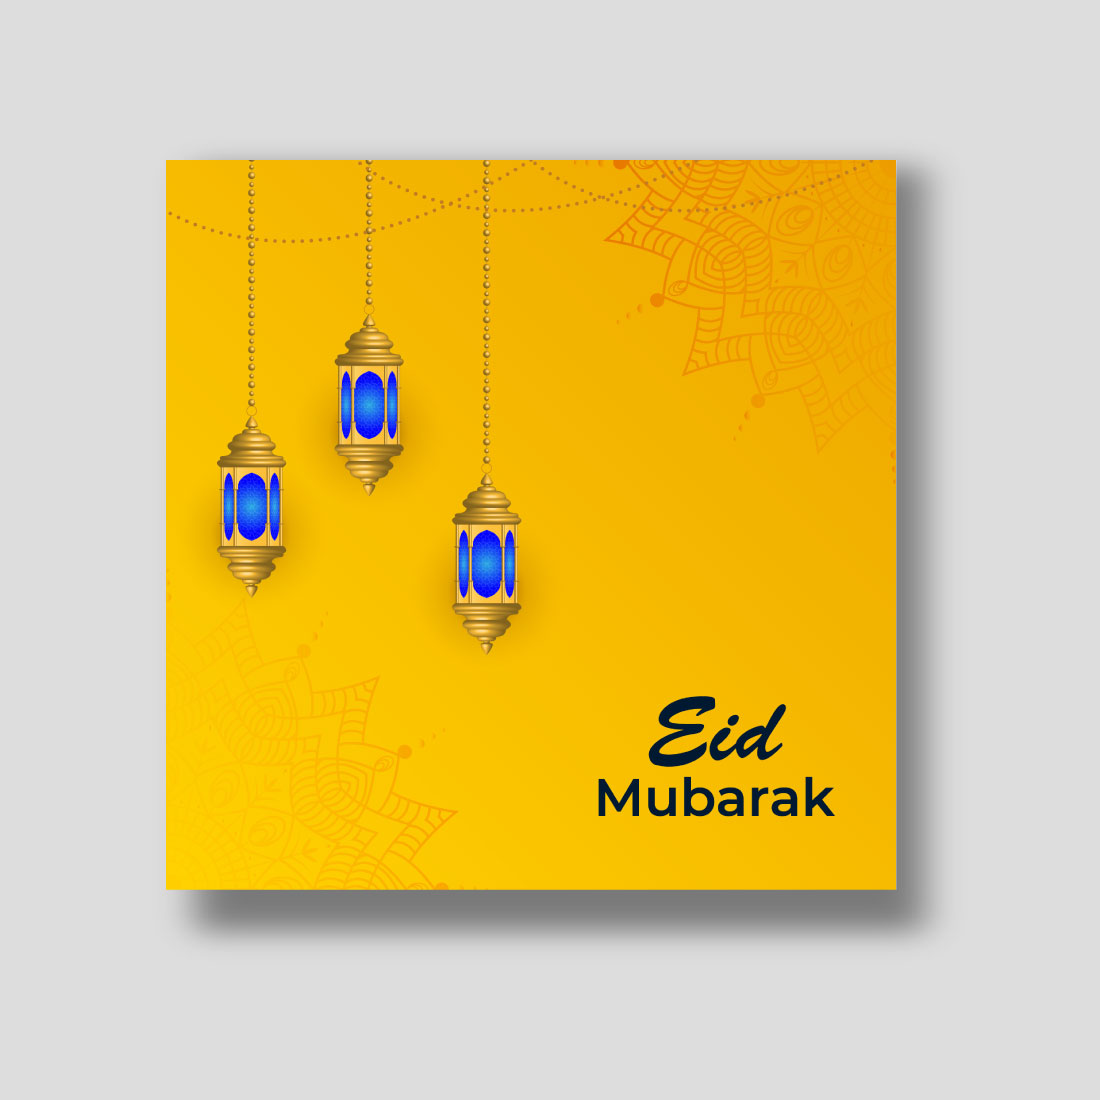 Eid Mubarak Social Media Design preview image.